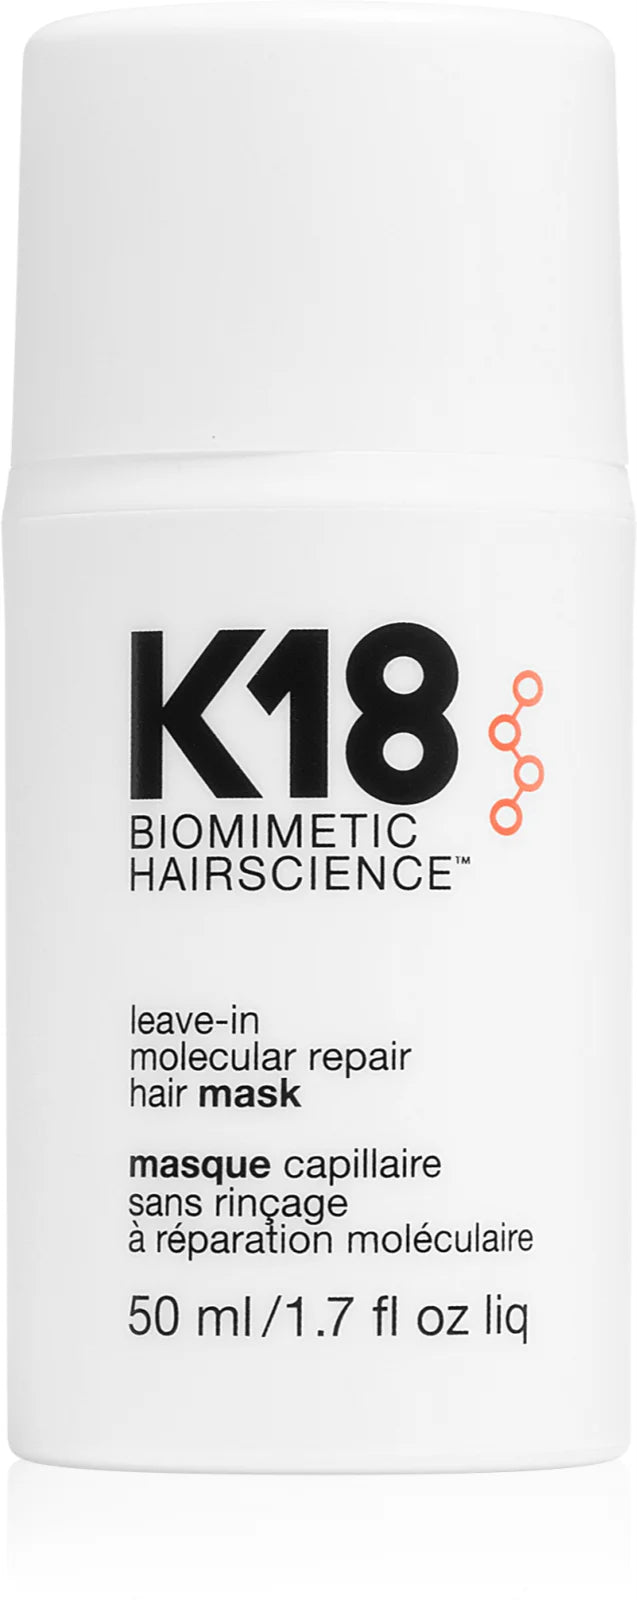 K18 Leave-in Molecular Repair Mask 50 ml